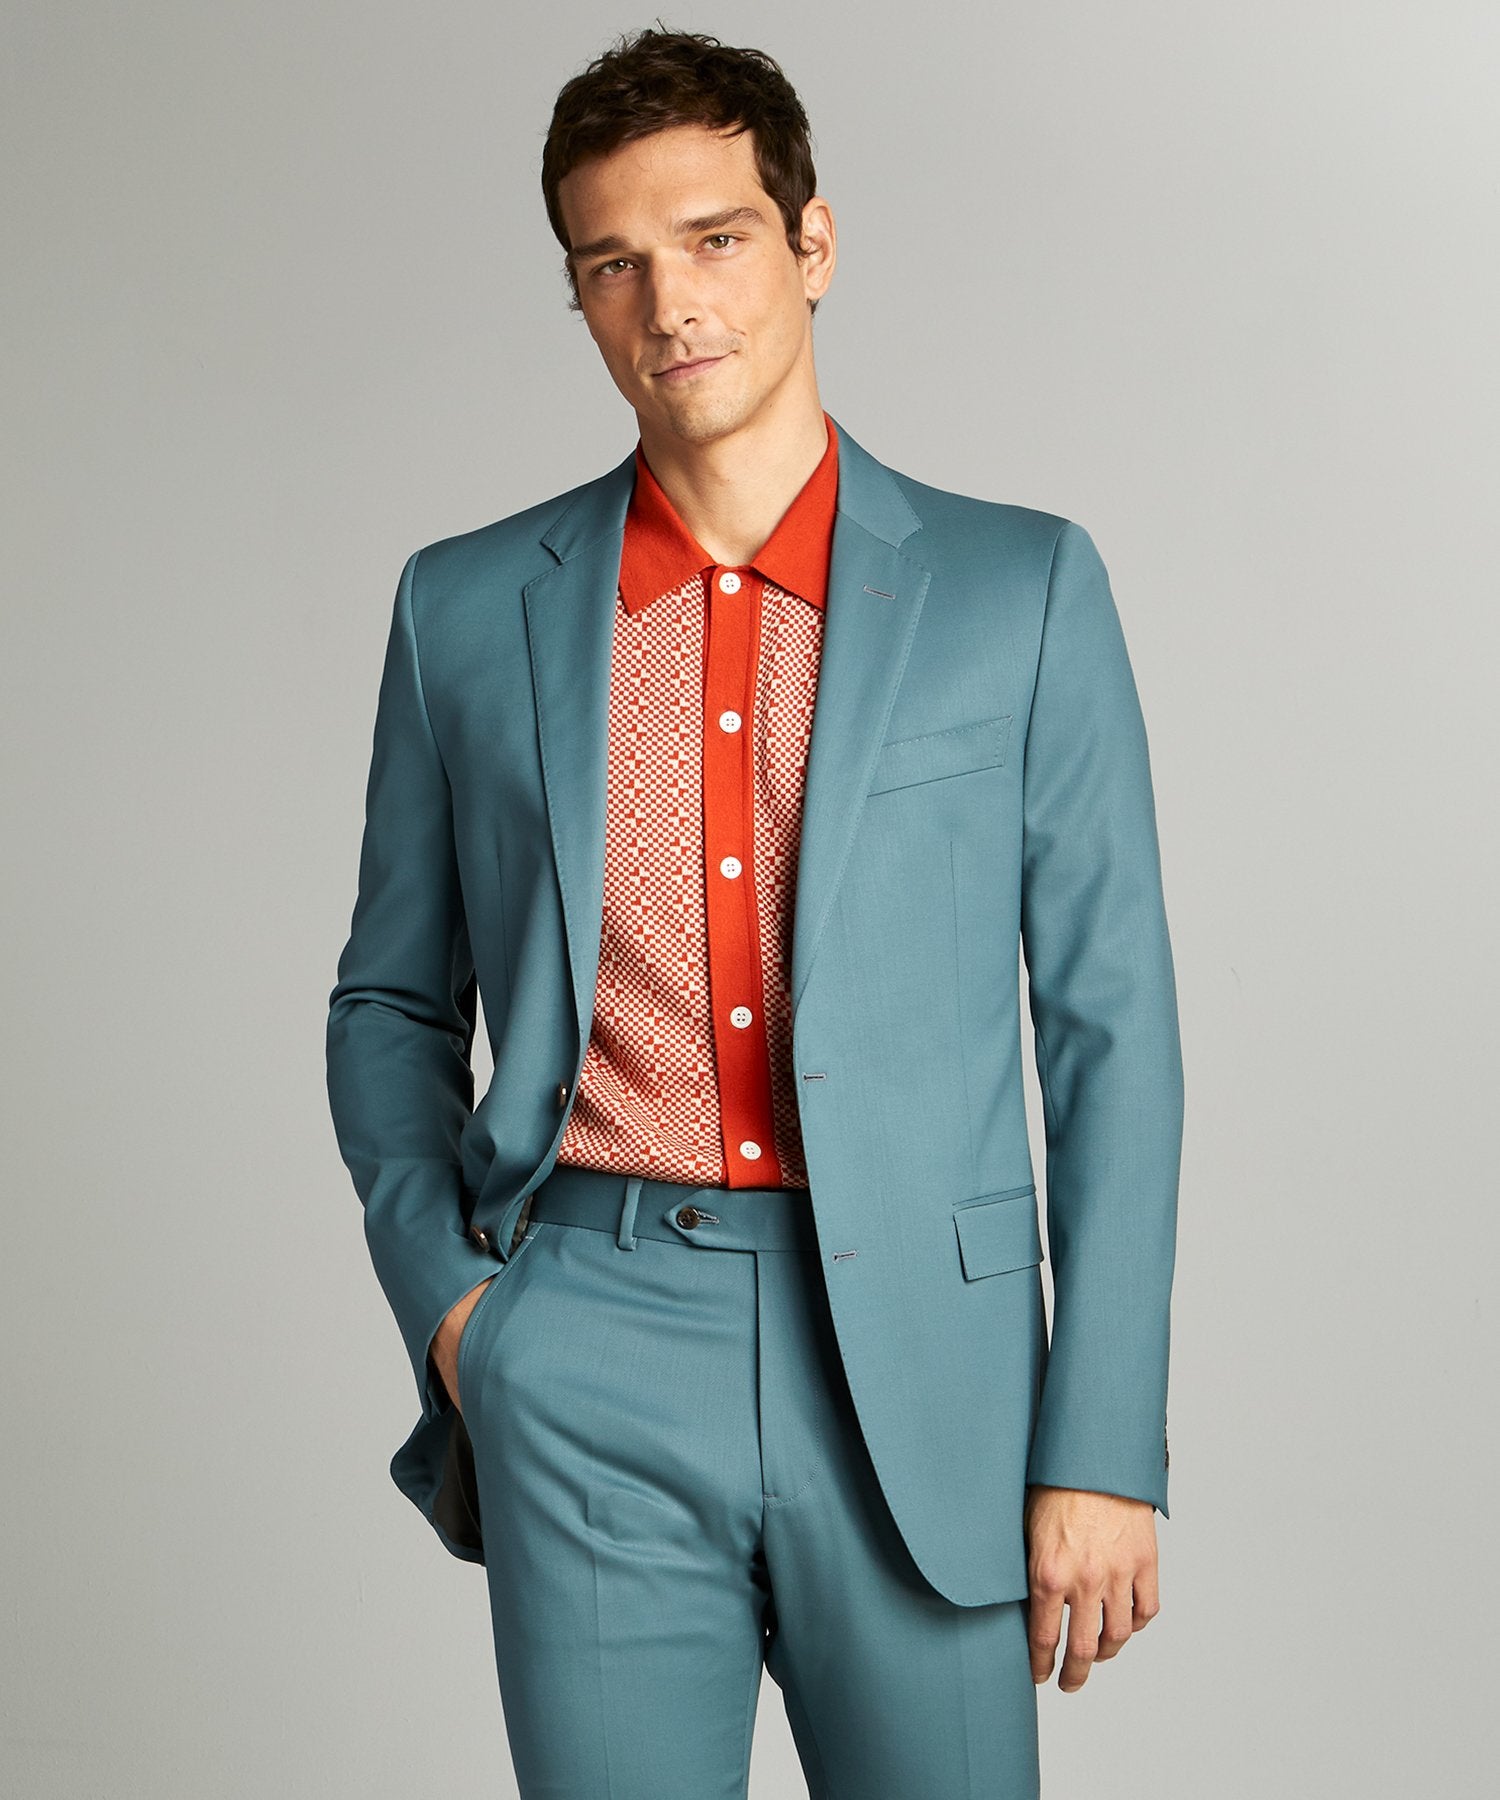 Tan gabardine suit pant with jacket | Pants for women, Petite jacket, Suit  pant